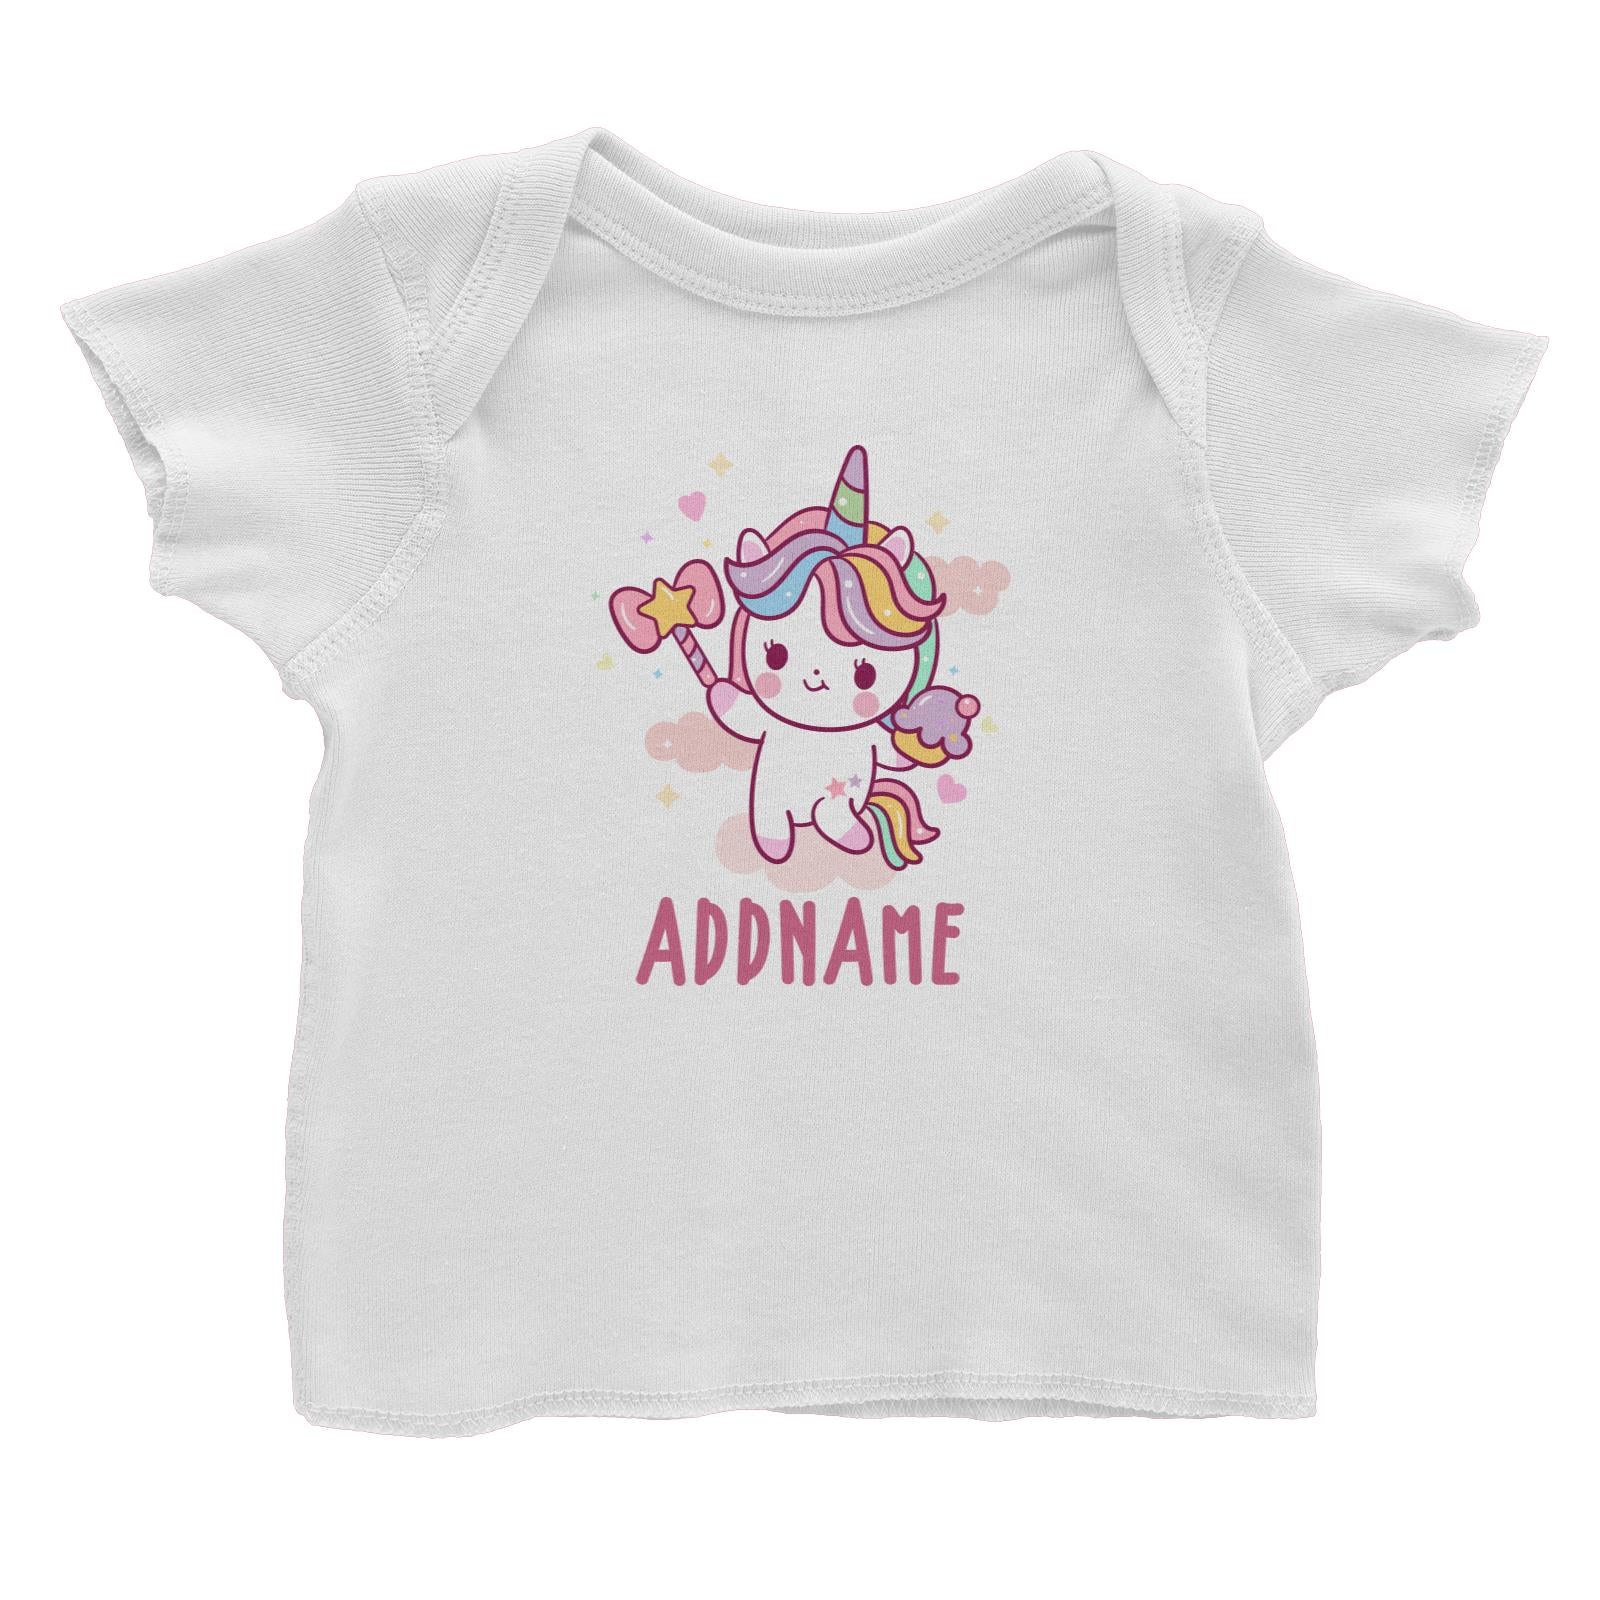 Unicorn And Princess Series Cute Unicorn Holding Magic Wand Addname Baby T-Shirt